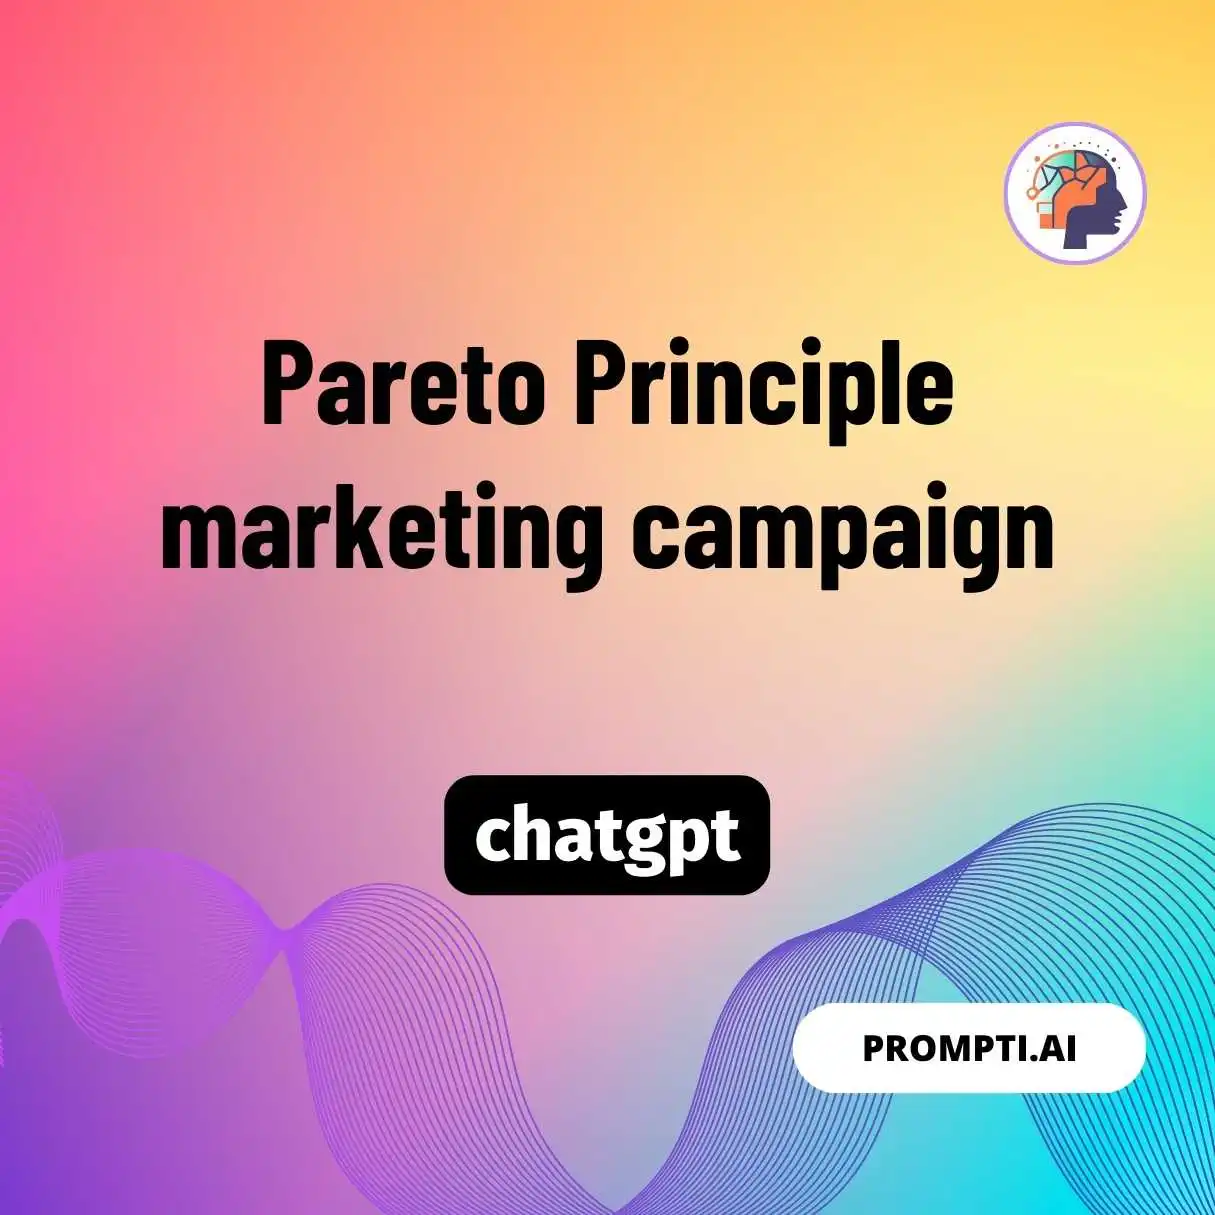 Pareto Principle marketing campaign